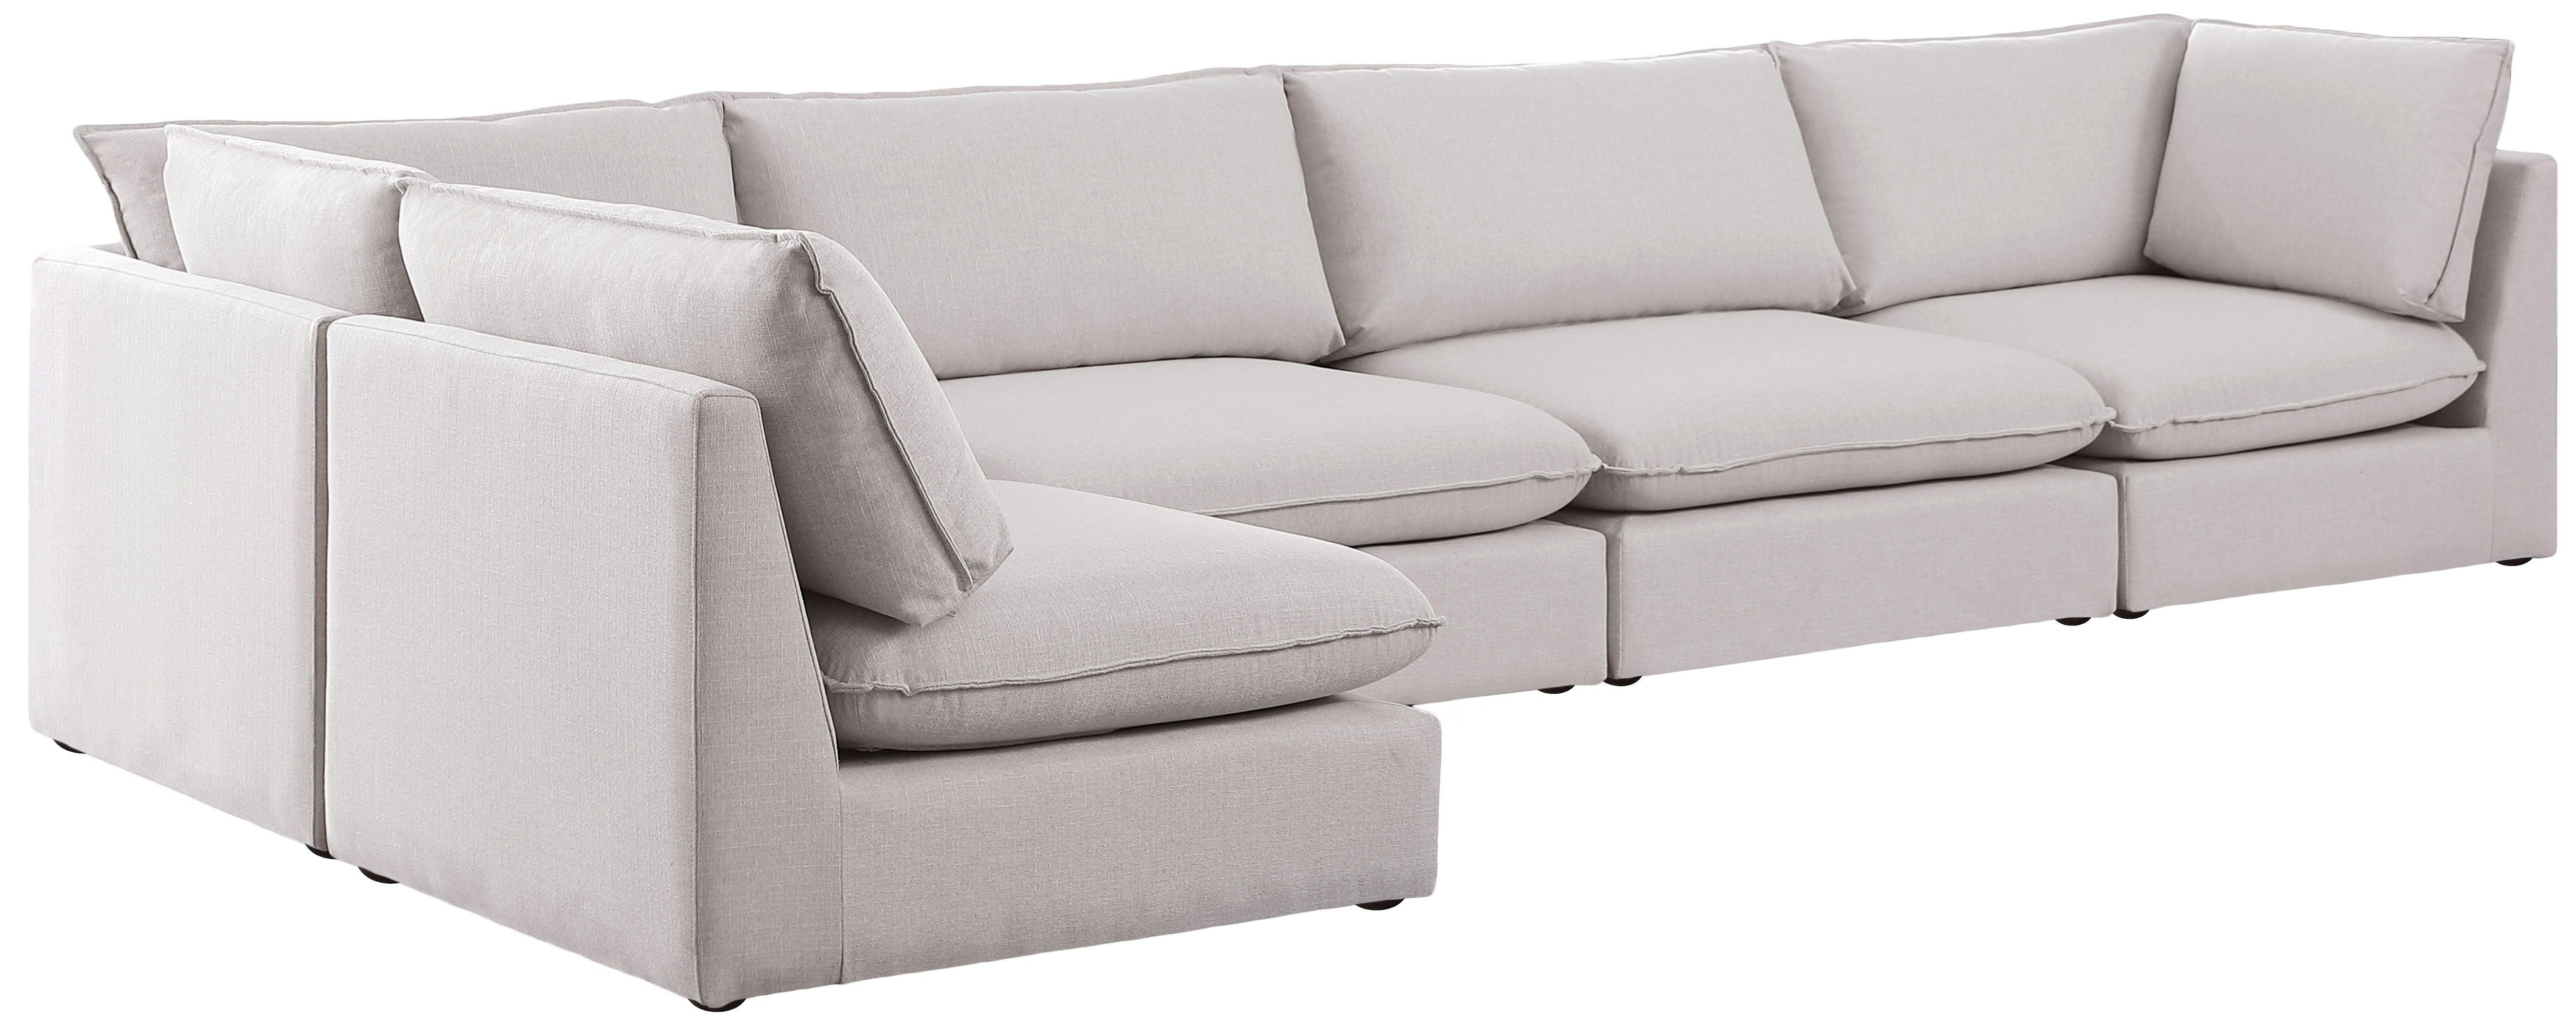 Meridian Furniture - Mackenzie - Modular Sectional 5 Piece - Beige - Fabric - 5th Avenue Furniture